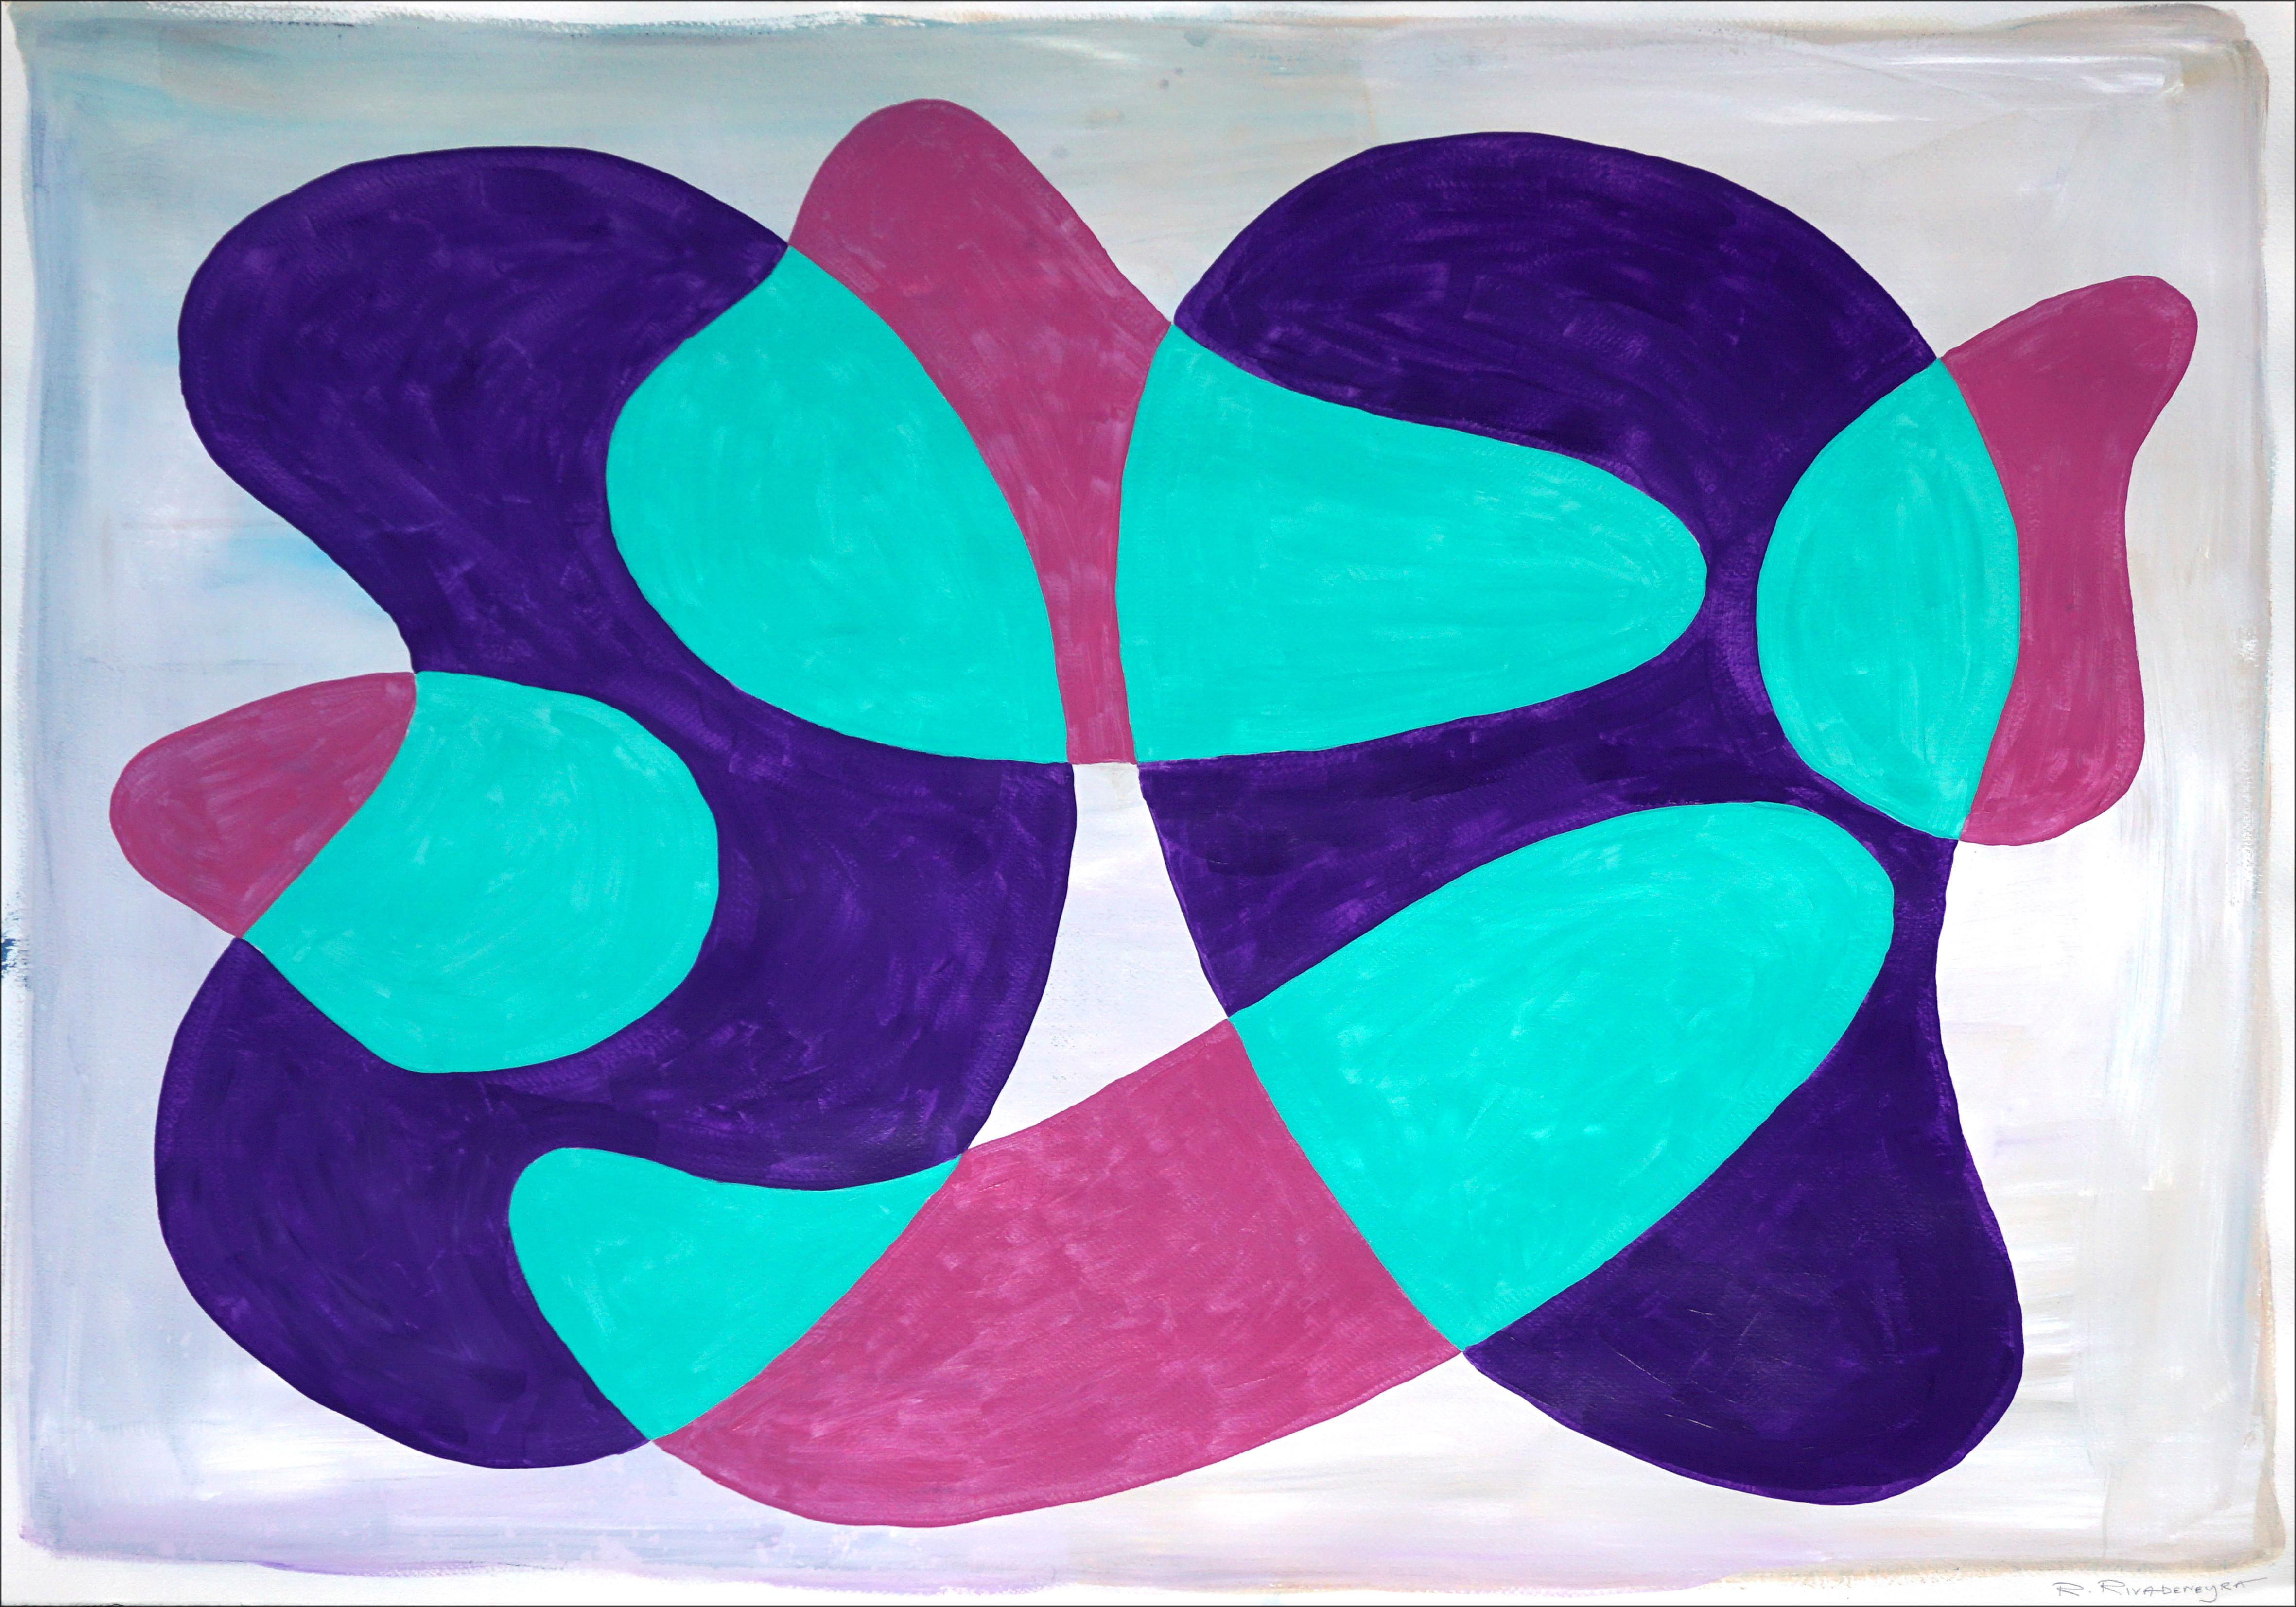 Ryan Rivadeneyra Abstract Painting – Transluzente Teal Kidney-Pools in Mid-Century-Formen und Schichten in kaltblauen Tönen